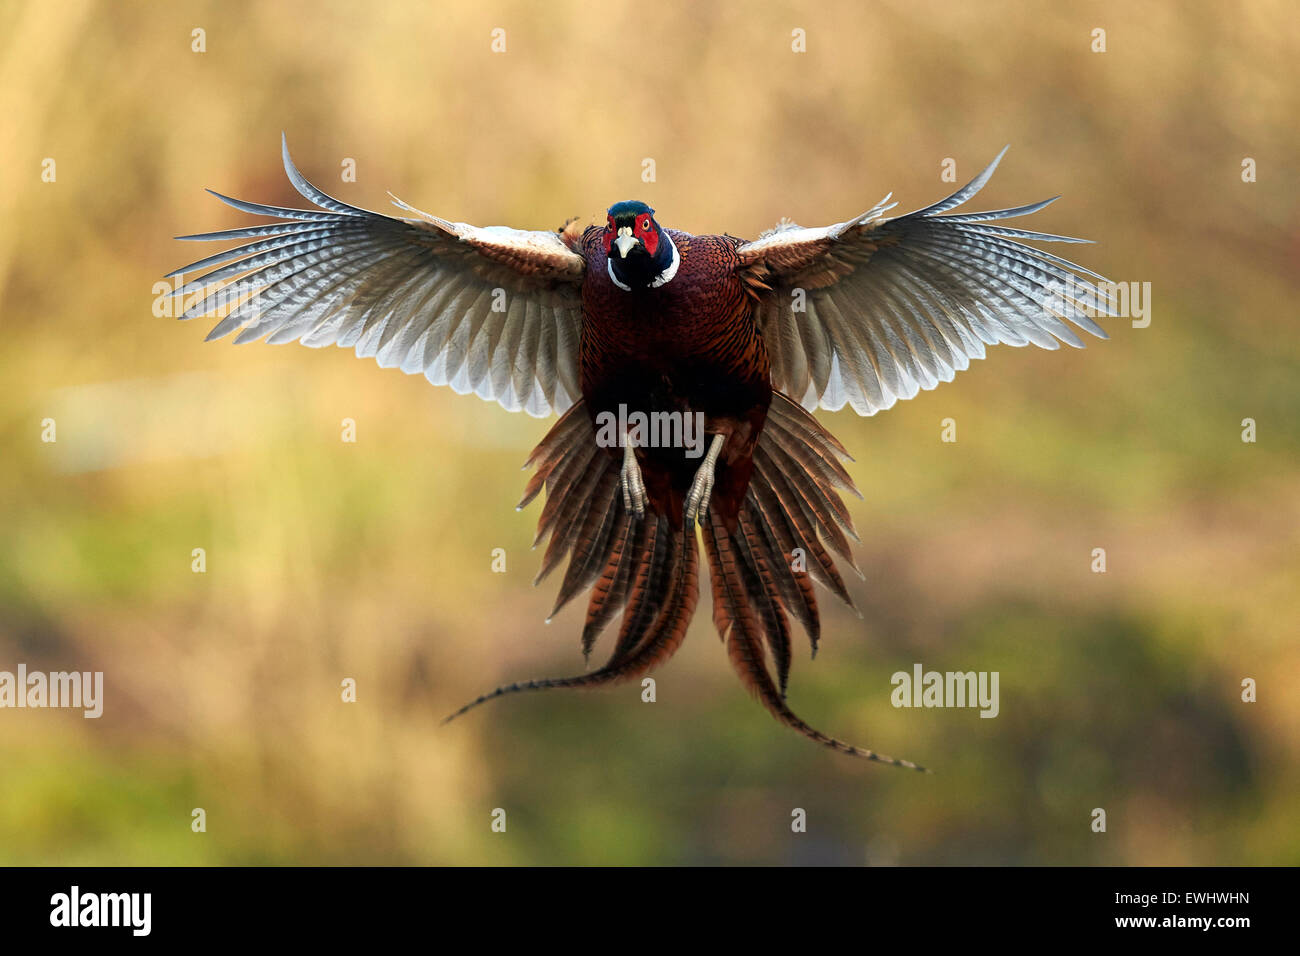 Coq faisan vol face à l'appareil photo, ailes étirés, dans la lumière du soleil du matin Banque D'Images